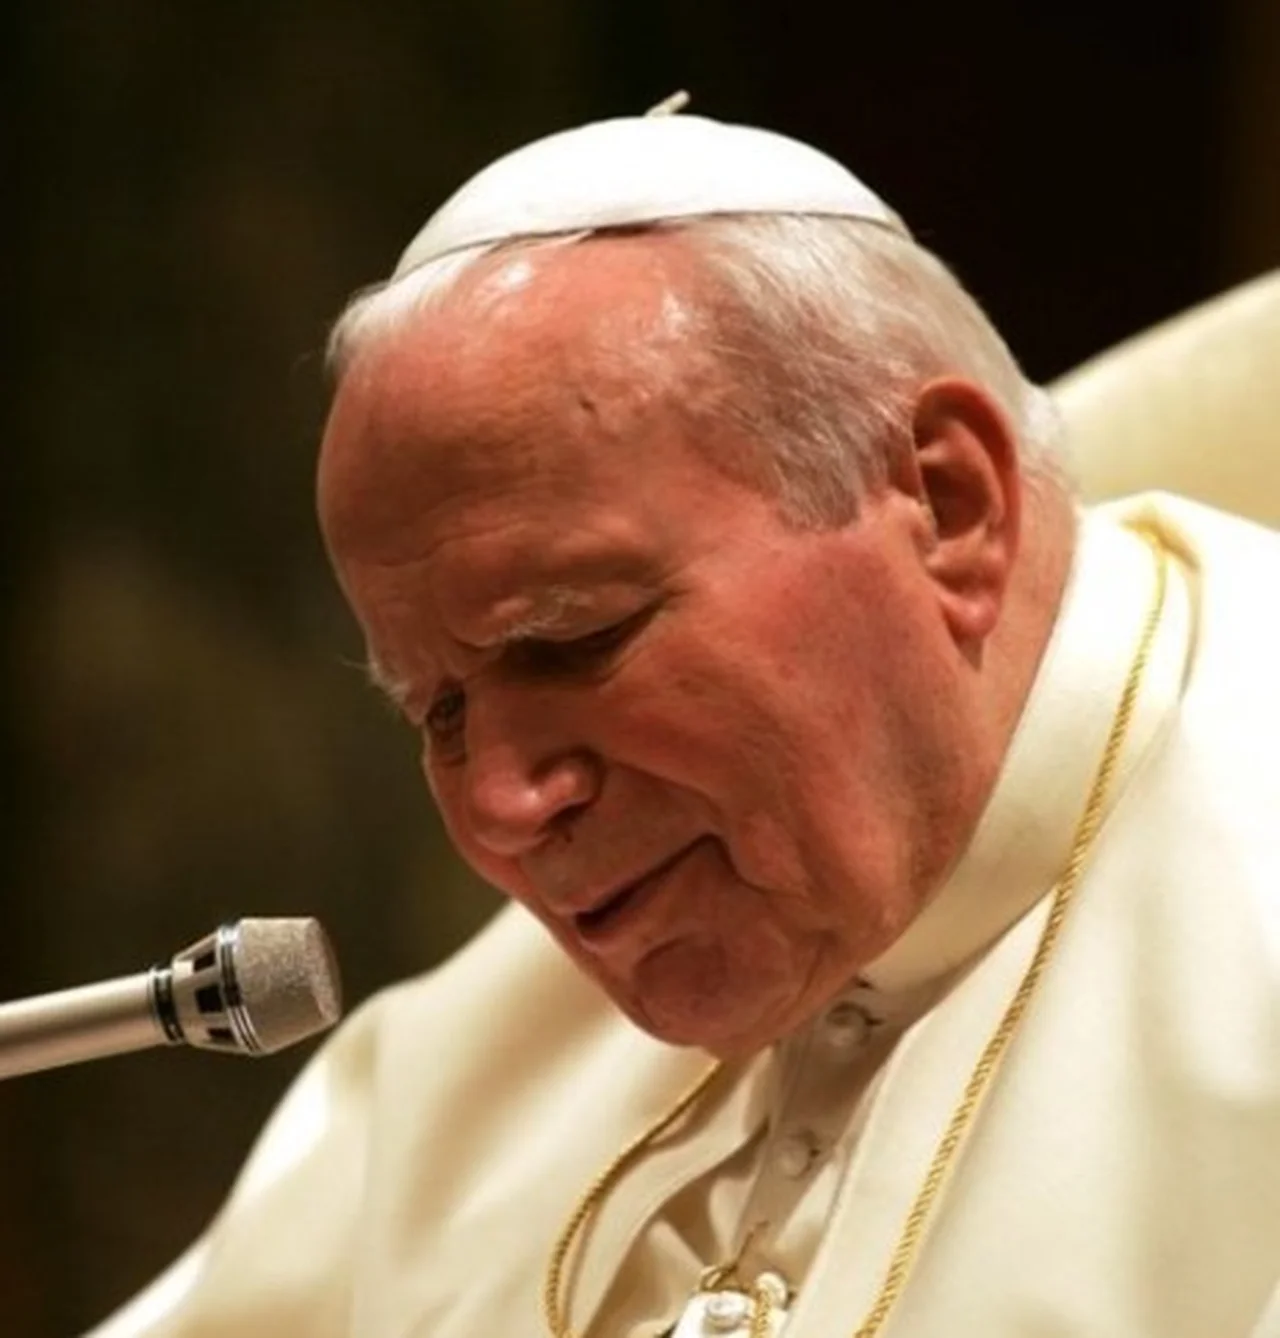 Dzień Papieża Jana Pawła II: Wielki Święty, który zmienił świat